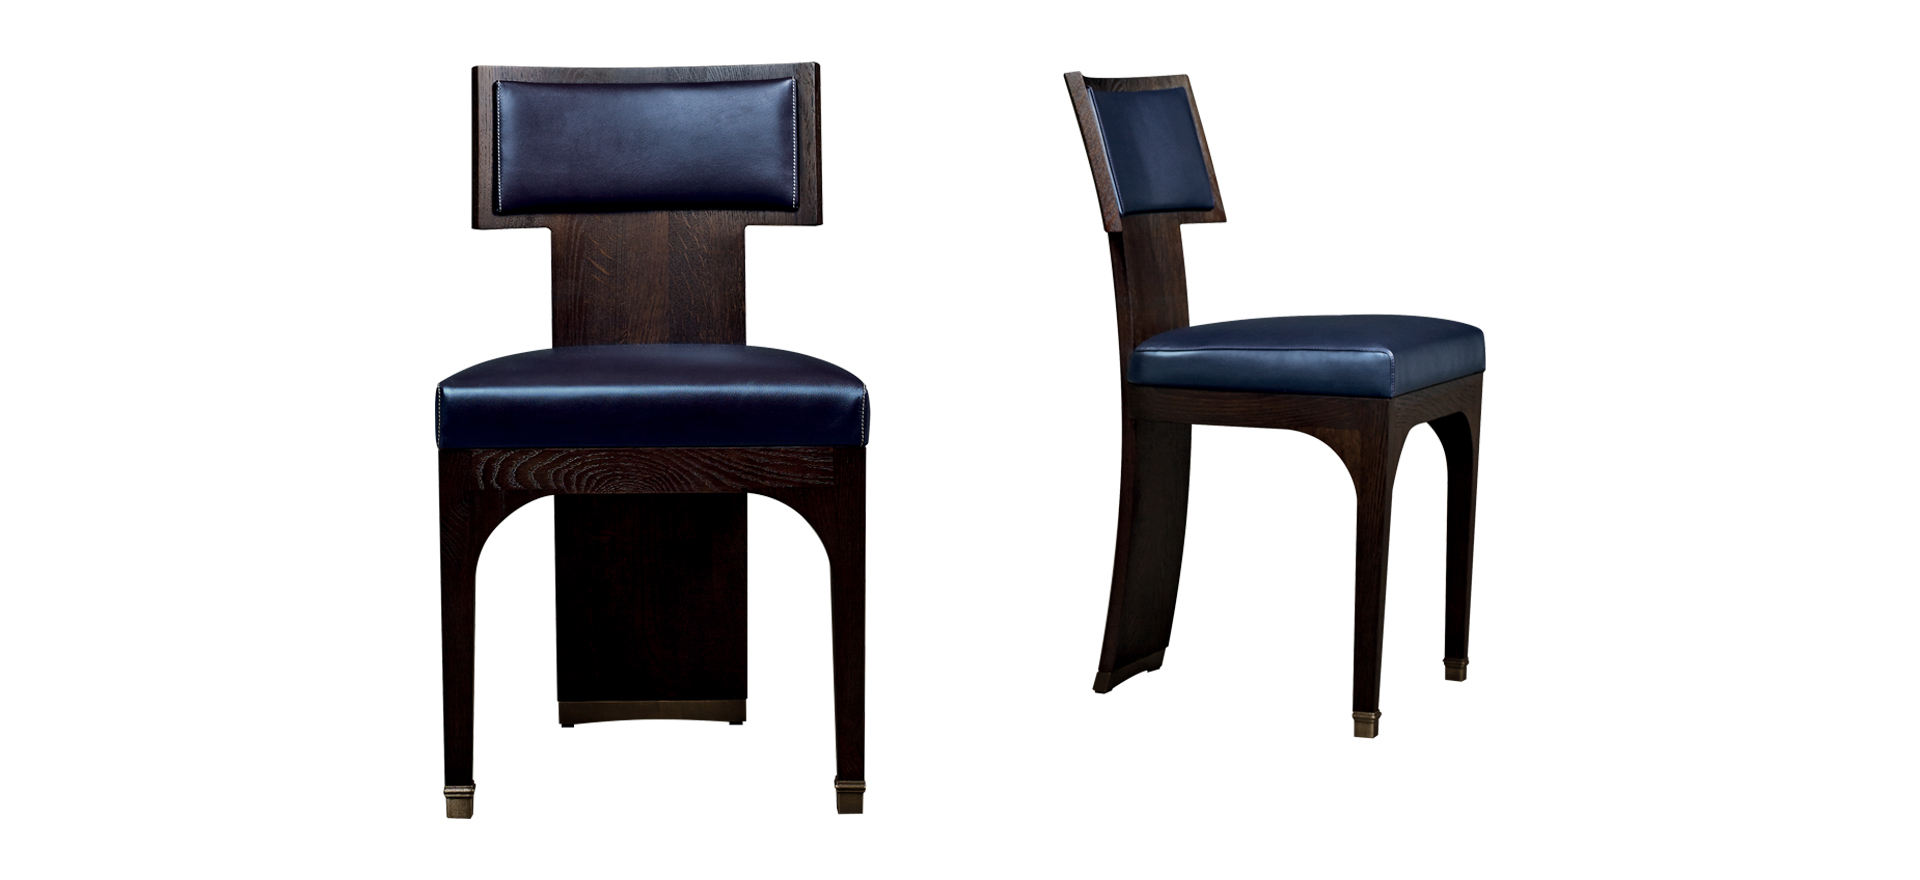 DC Chair est une chaise de salle à manger en bois avec assise et dossier en cuir et avec finitions en bronze. Ce meuble fait partie de la collection « The London Collection » de Promemoria | Promemoria